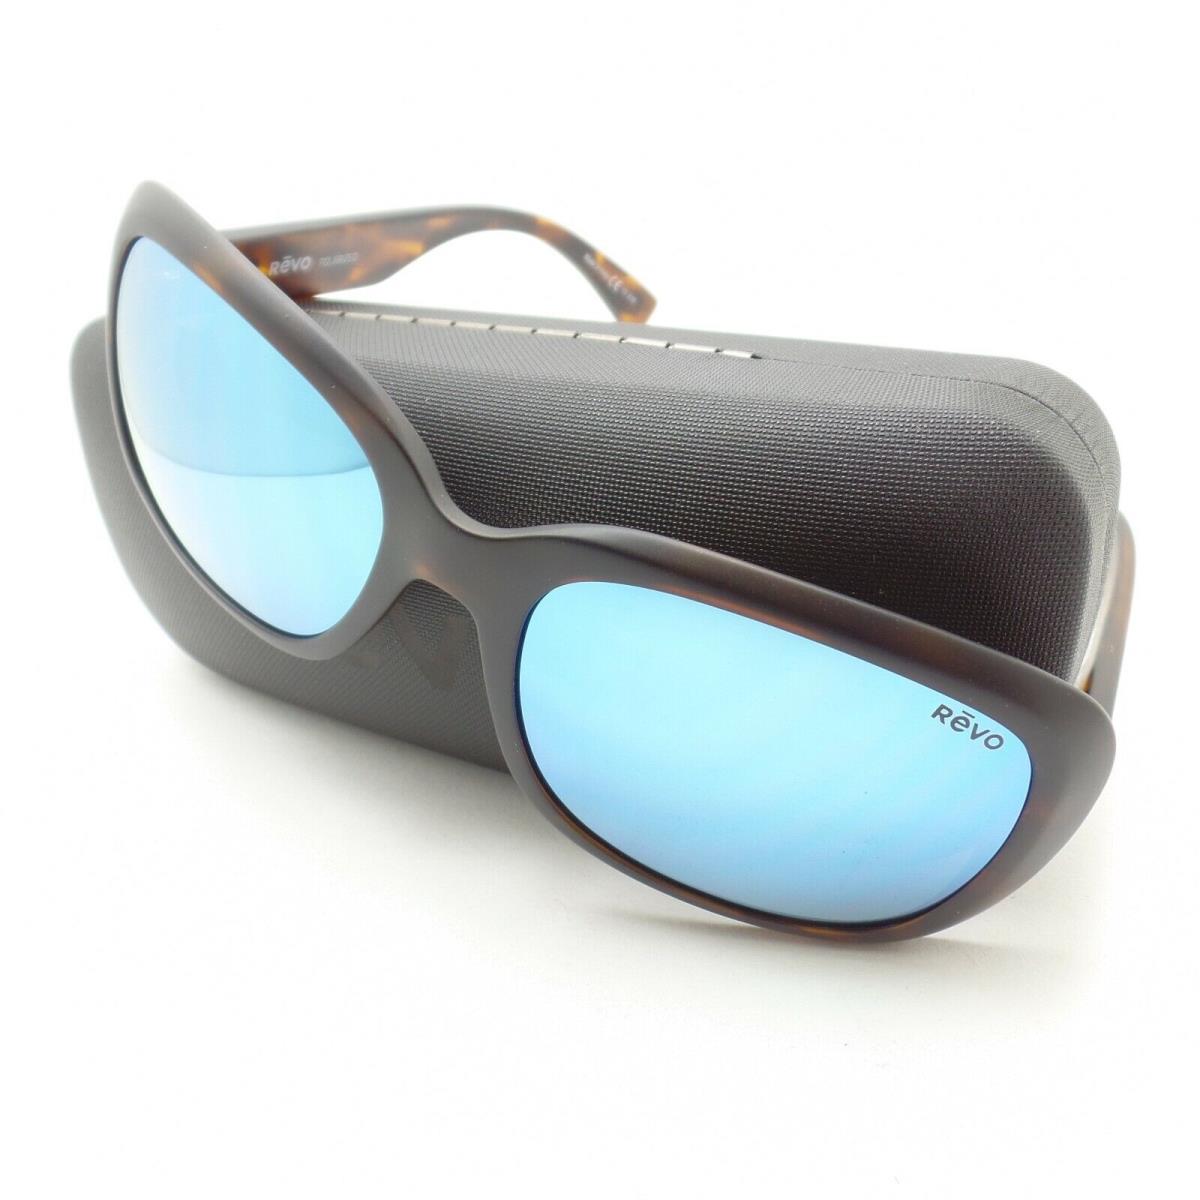 Revo Paxton Matte Tortoise Blue Water Mirror Polarized Sunglasses - Matte Tortoise Frame, Blue Water Lens